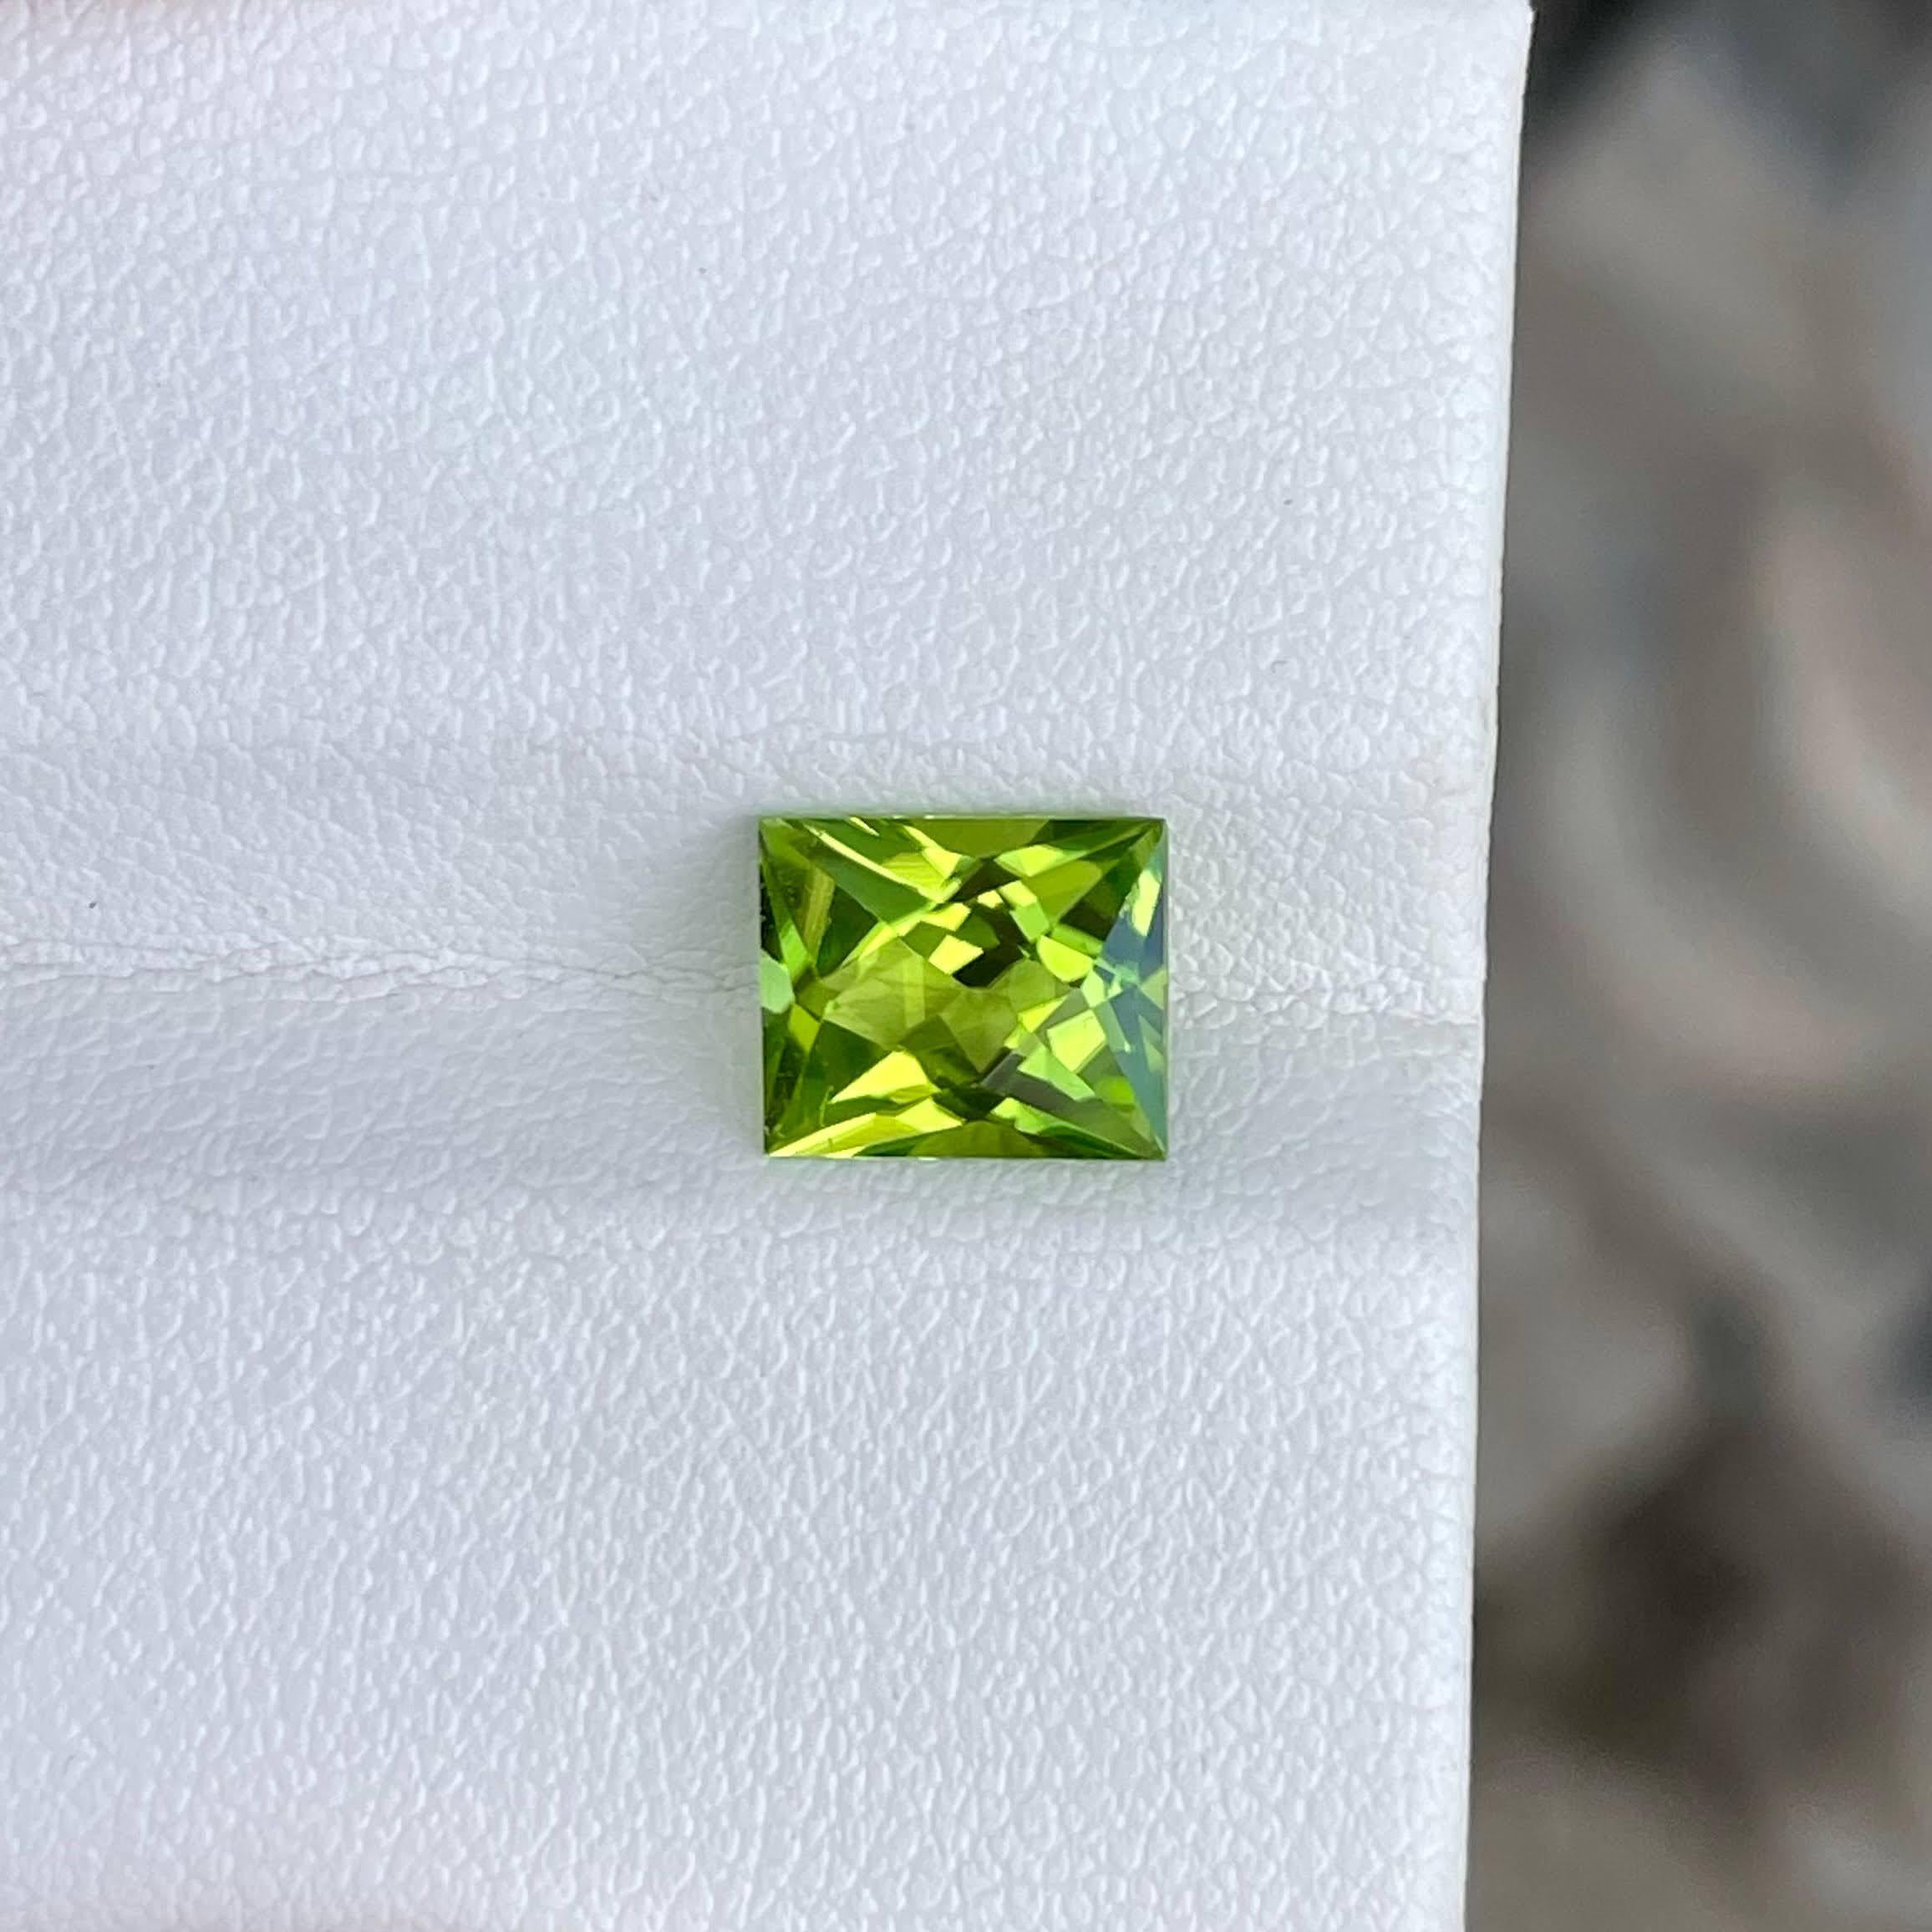 Poids 2,40 carats 
Dimensions 8.4x7.1x5.1 mm
Traitement aucun 
Origine : Pakistan 
Clarté VVS
Forme rectangulaire
Ciseaux de coupe




La pierre péridot vert de 2,40 carats est une pierre précieuse naturelle pakistanaise captivante, réputée pour sa